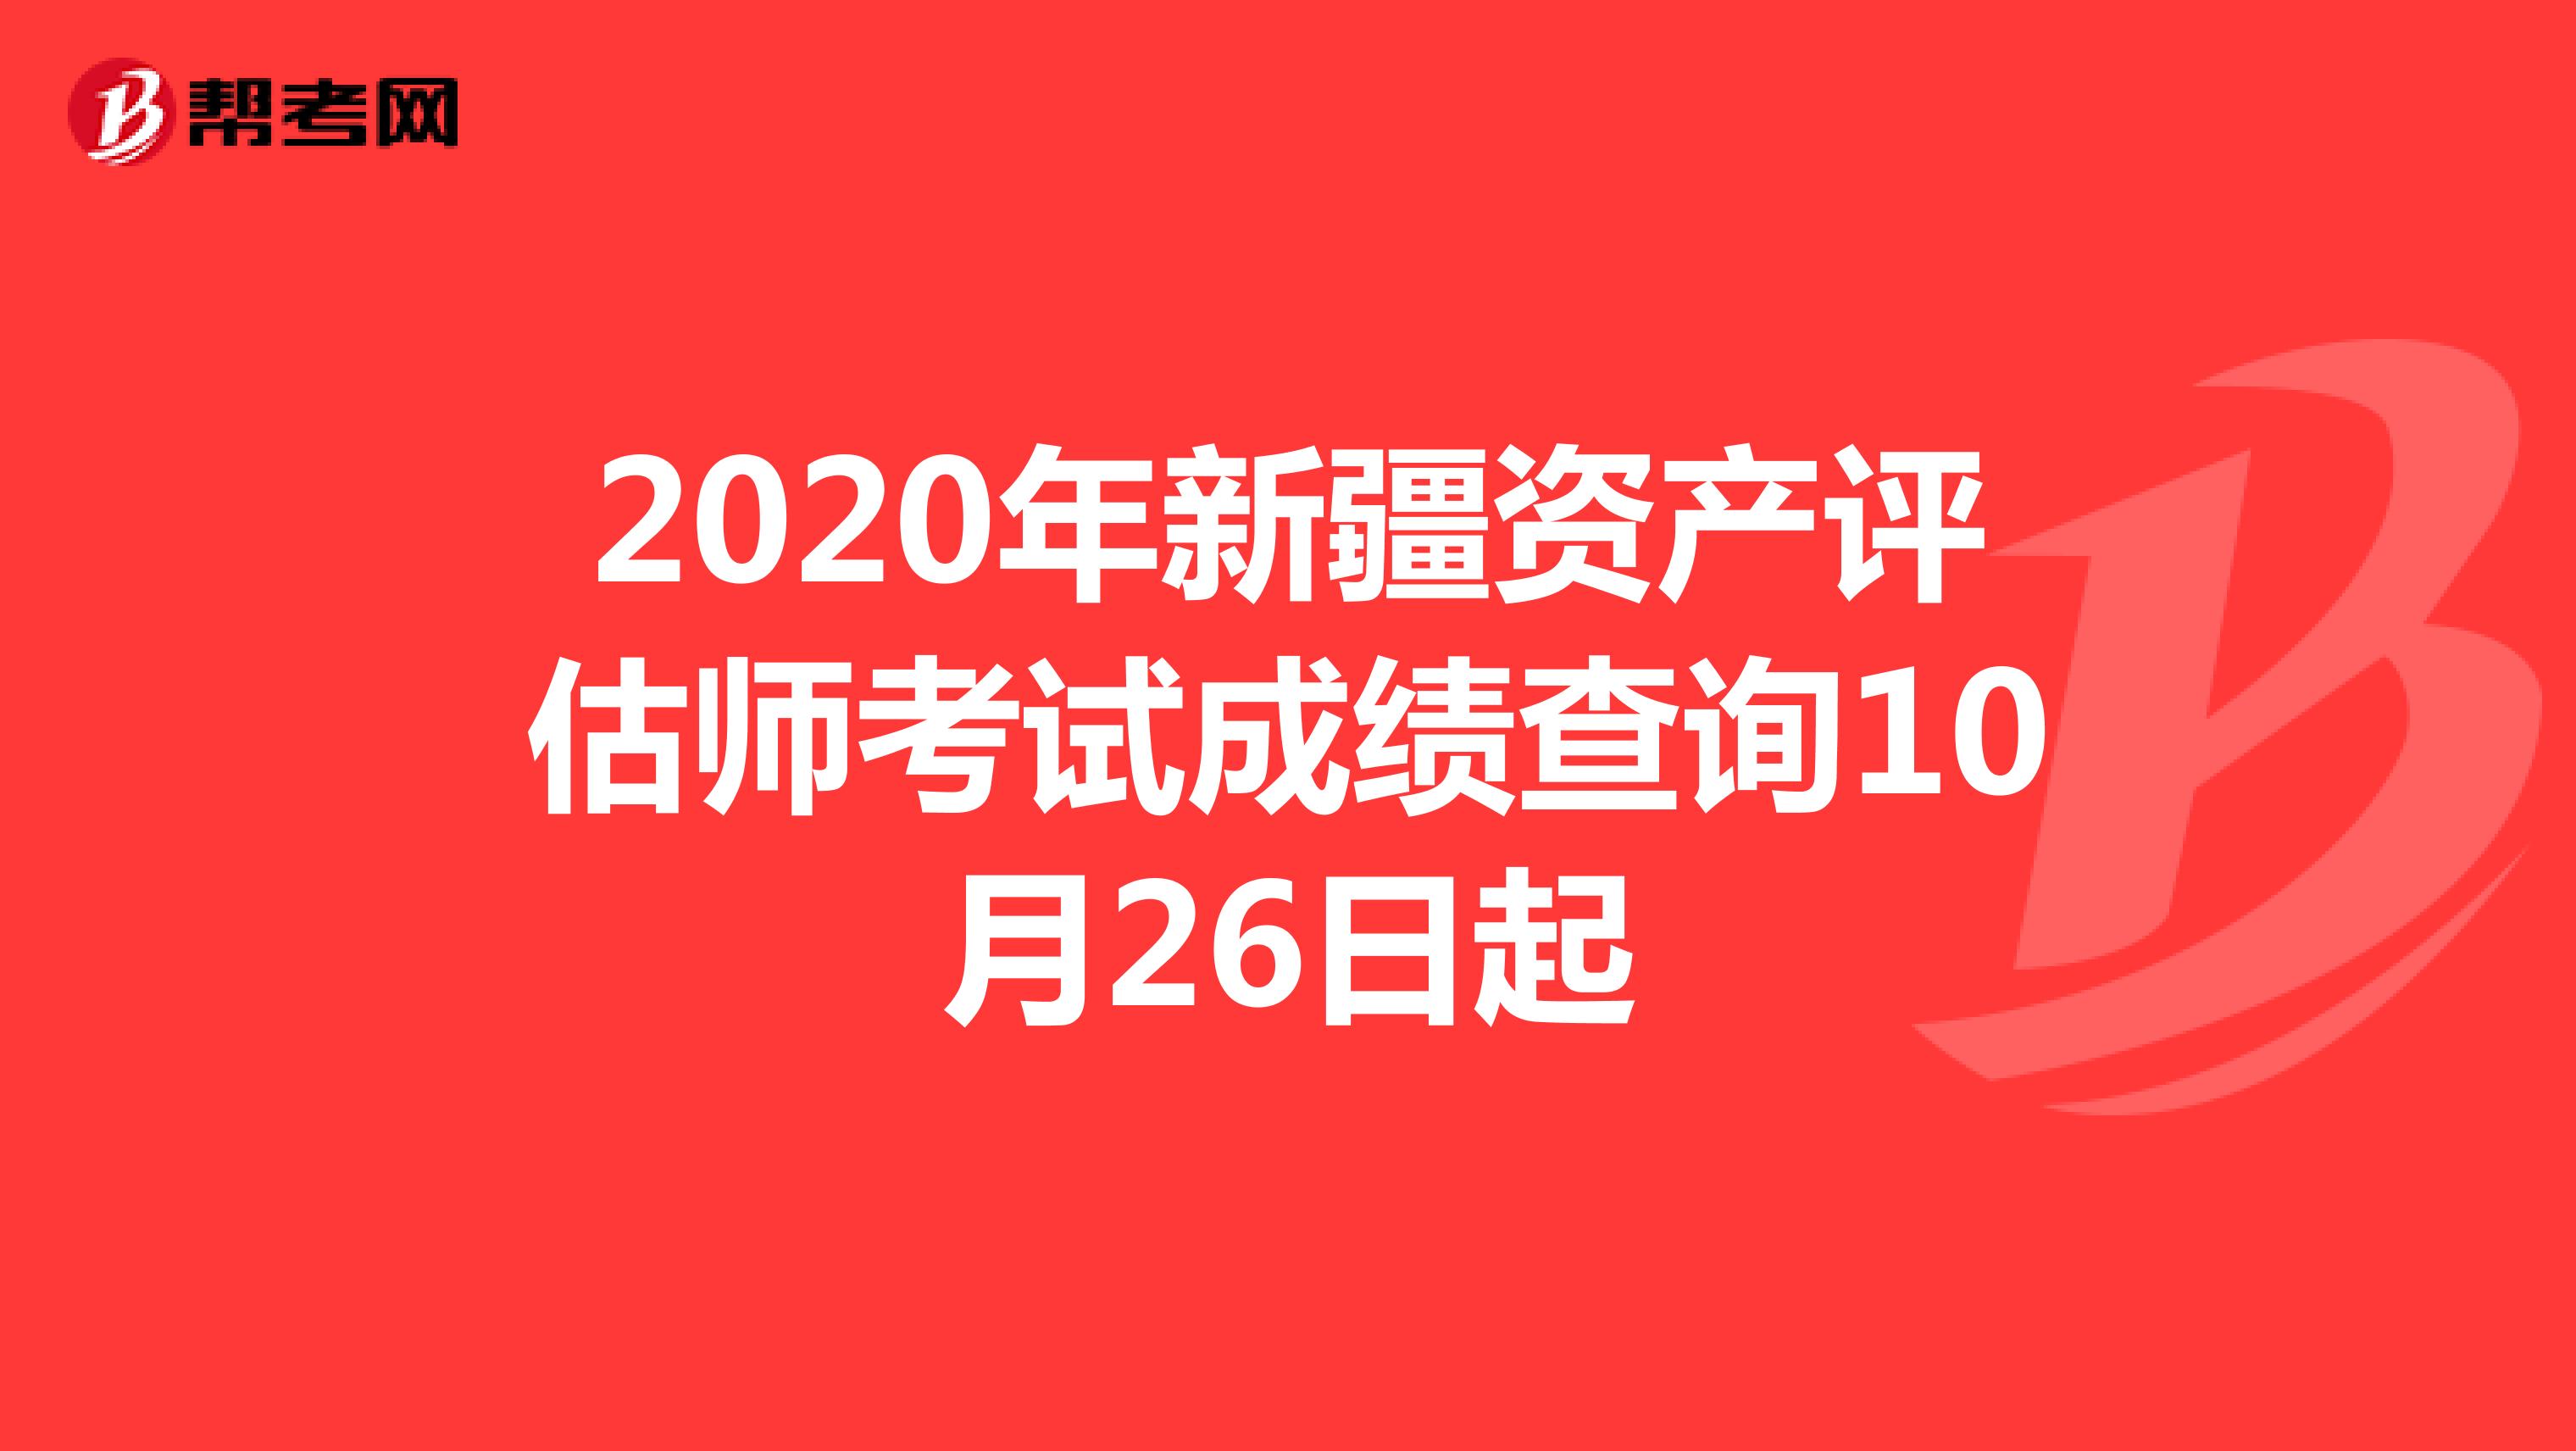 2020年新疆资产评估师考试成绩查询10月26日起